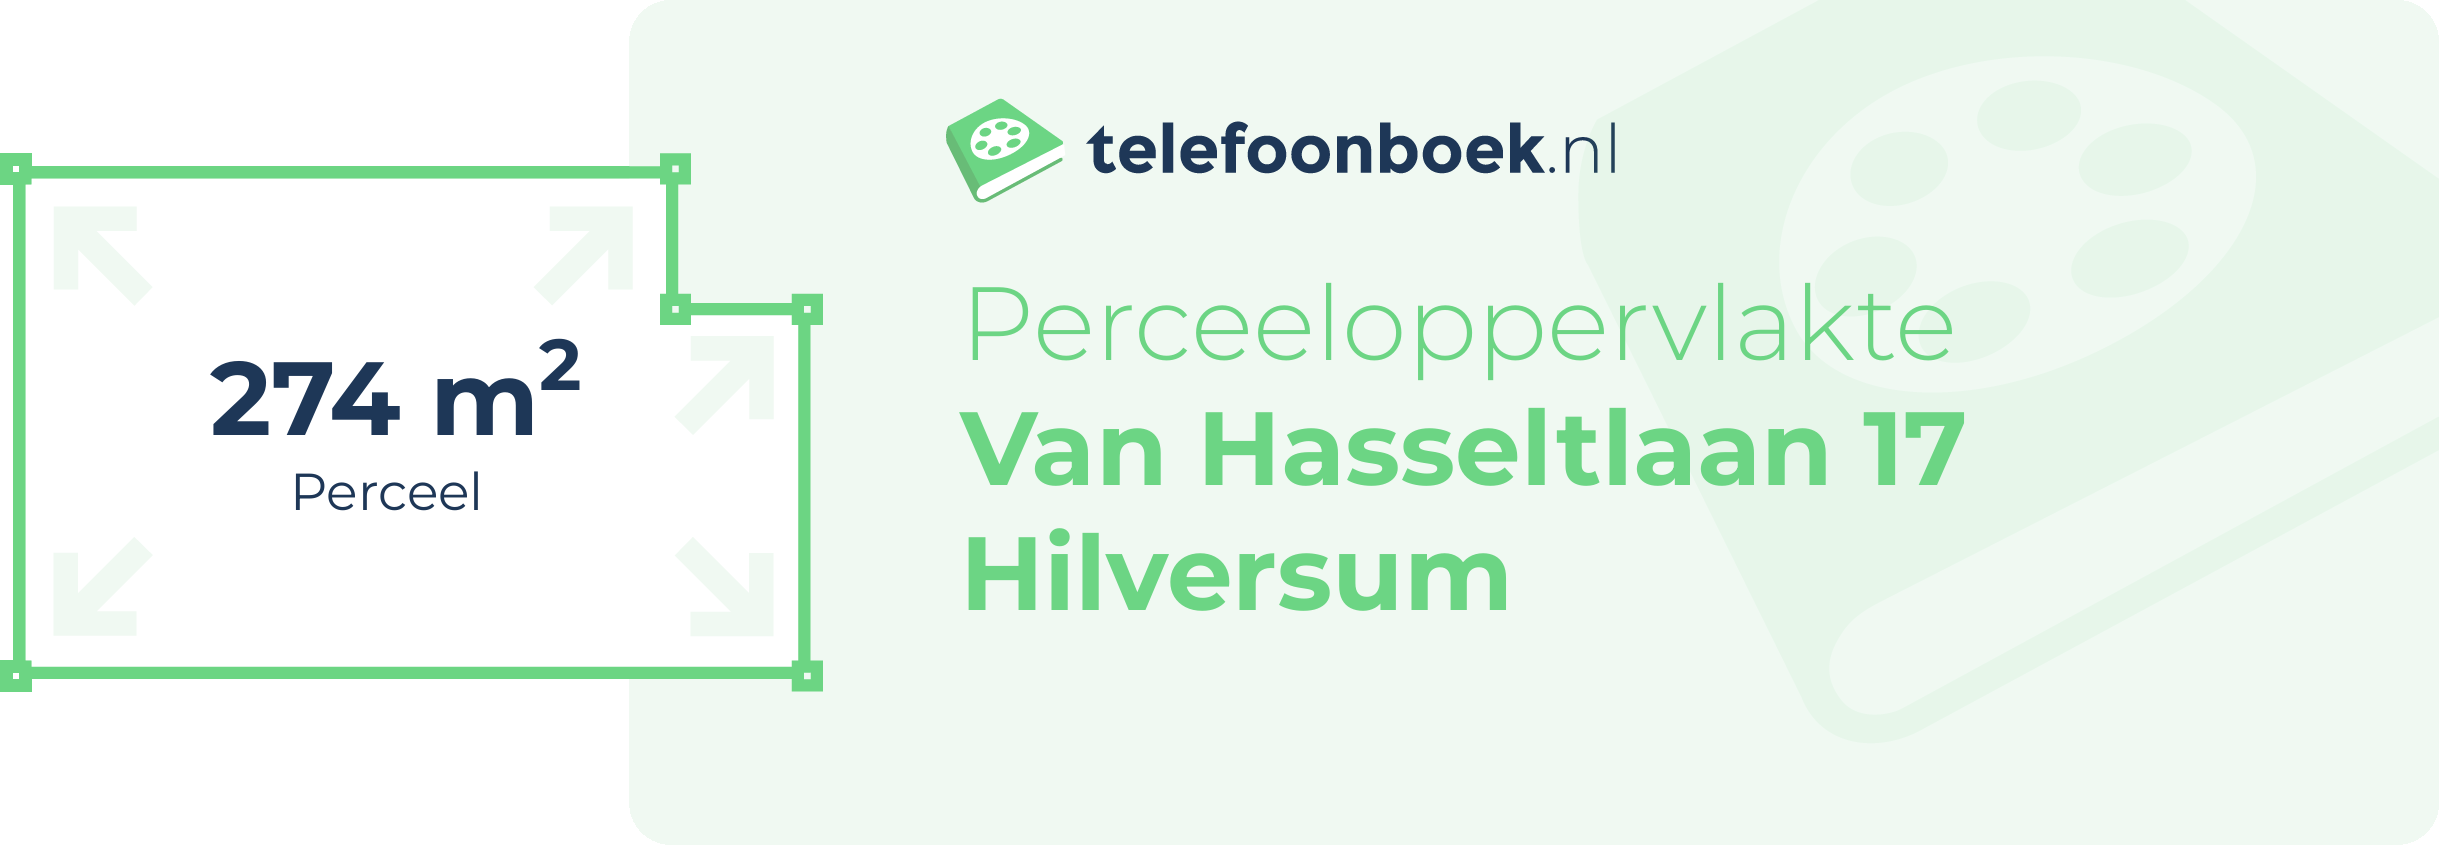 Perceeloppervlakte Van Hasseltlaan 17 Hilversum